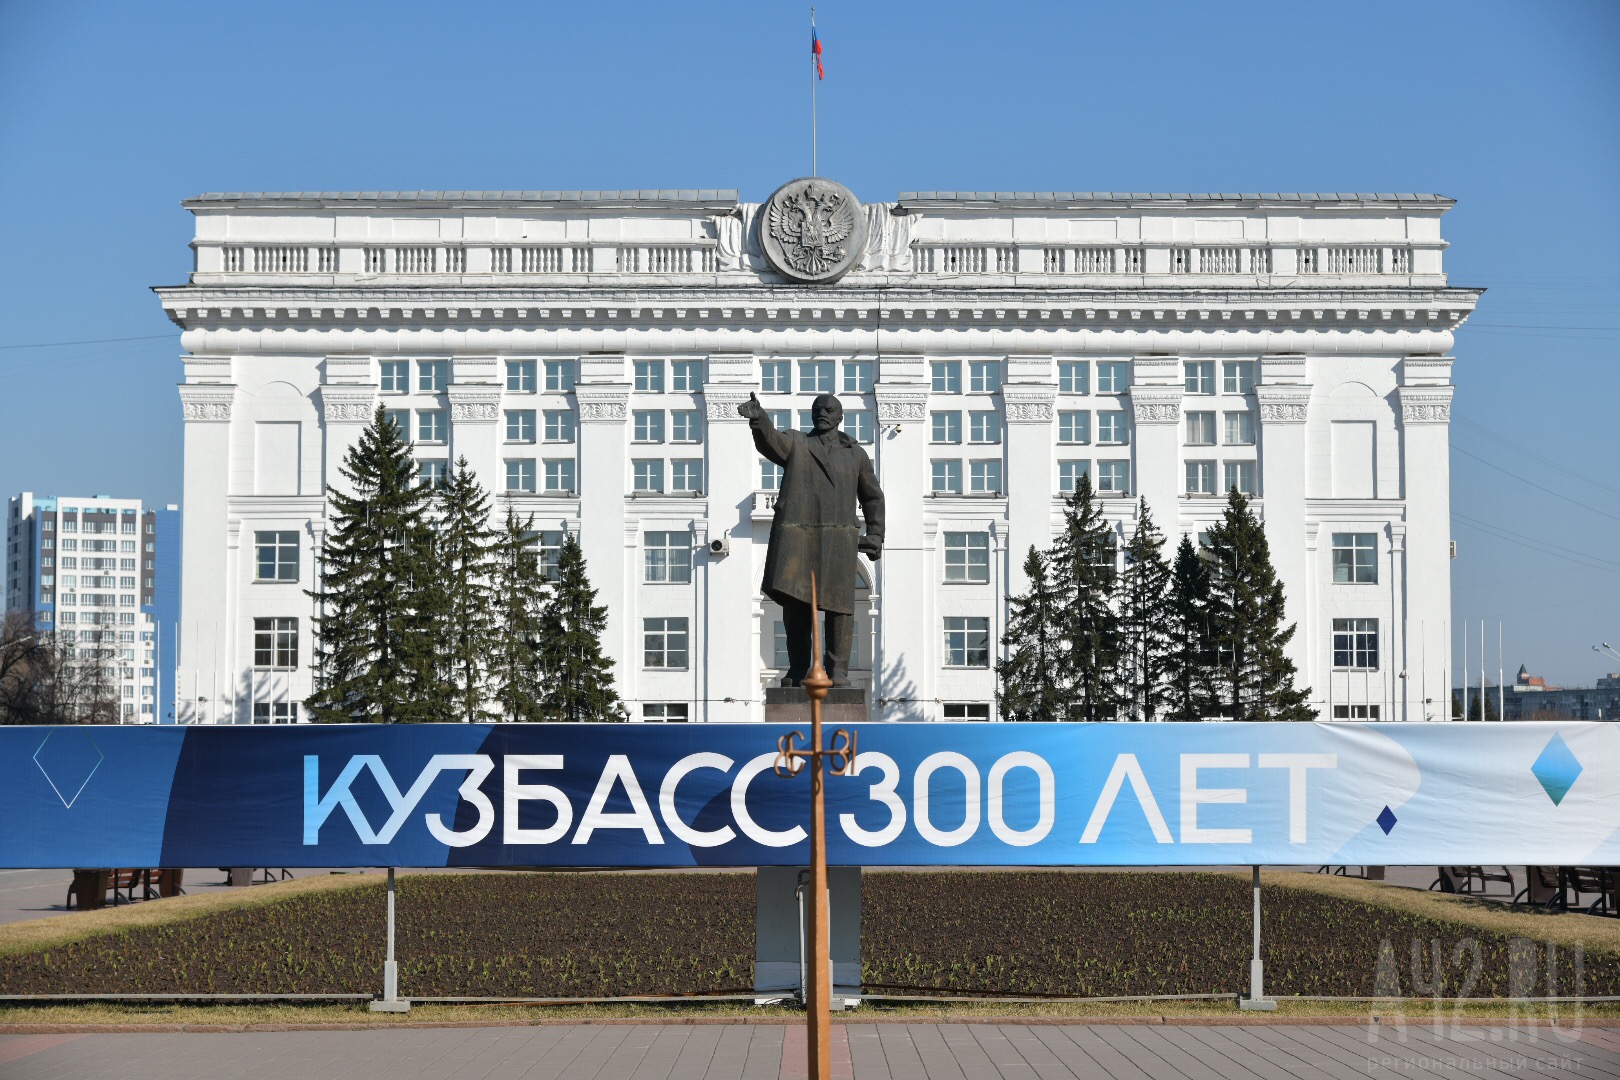 Кузбасс это. 300 Лет Кузбассу Кемеровская область - Кузбасс. Правительство Кузбасса. Парламент Кузбасса. Кемерово 300 лет.